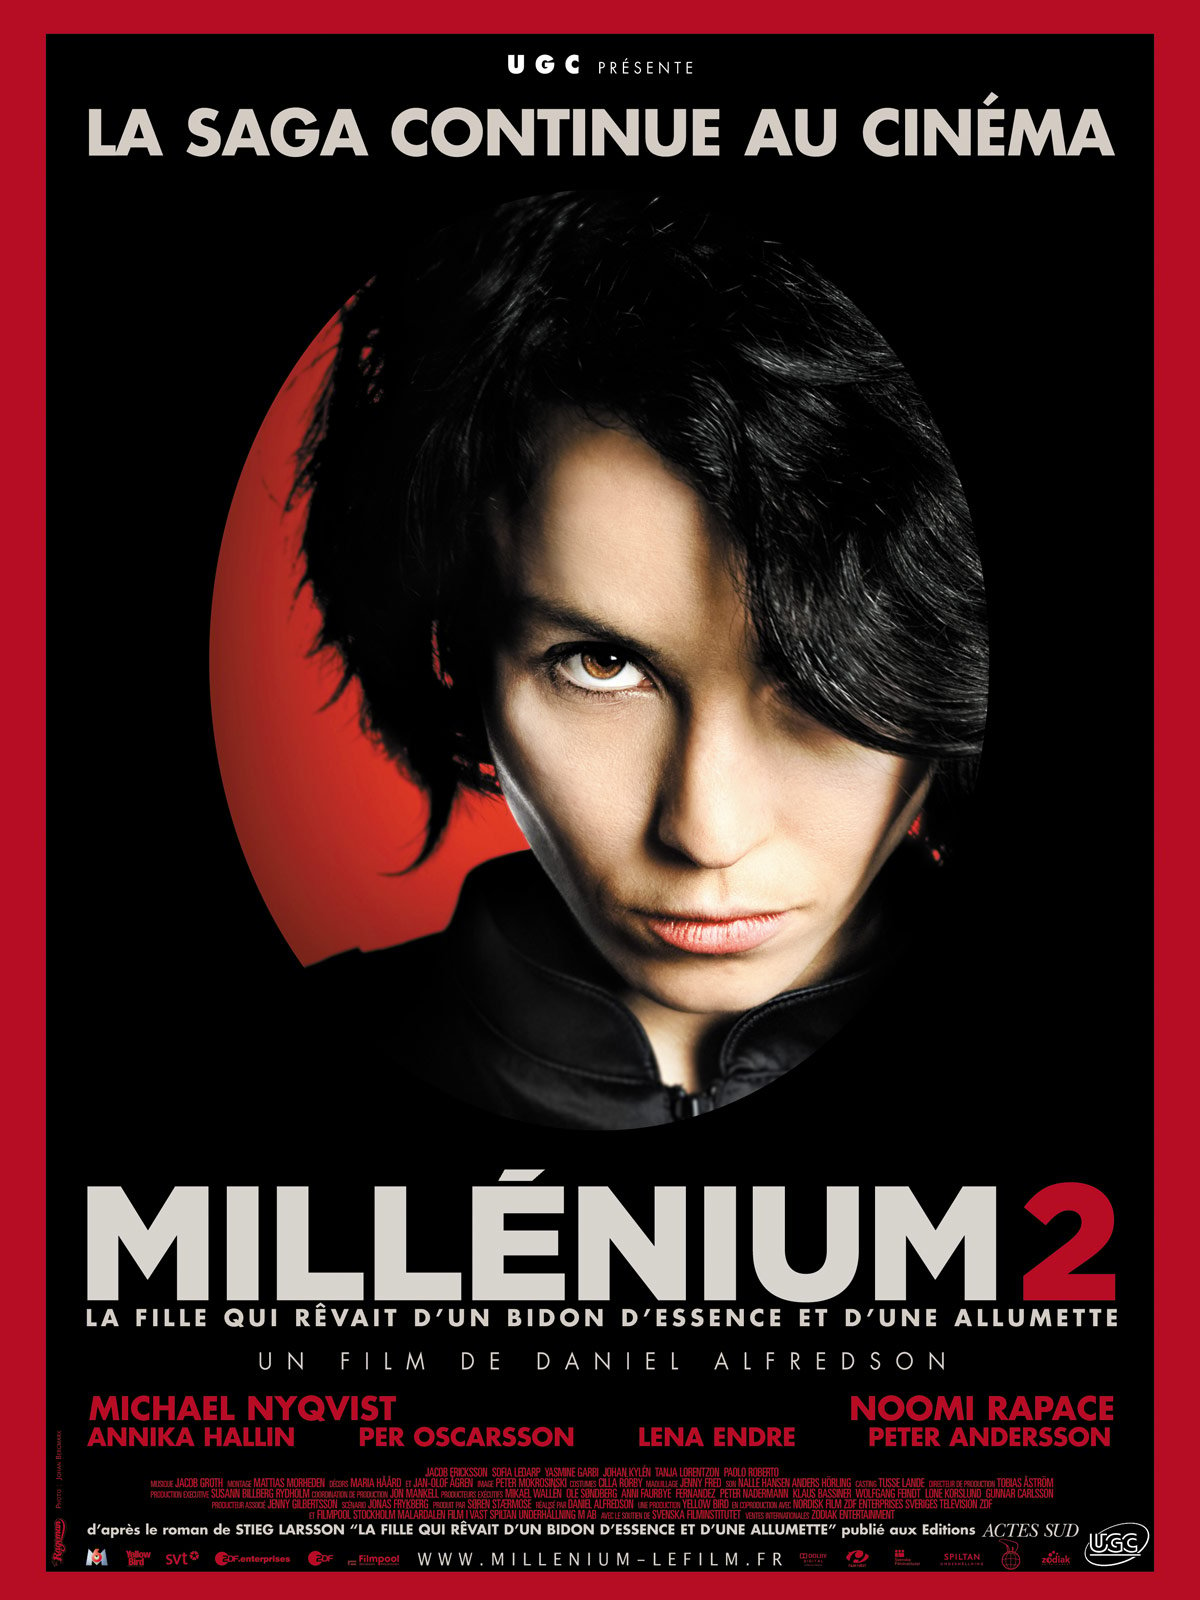 Millenium 2 - La Fille qui revait d'un bidon d'essence et d'une allumette streaming